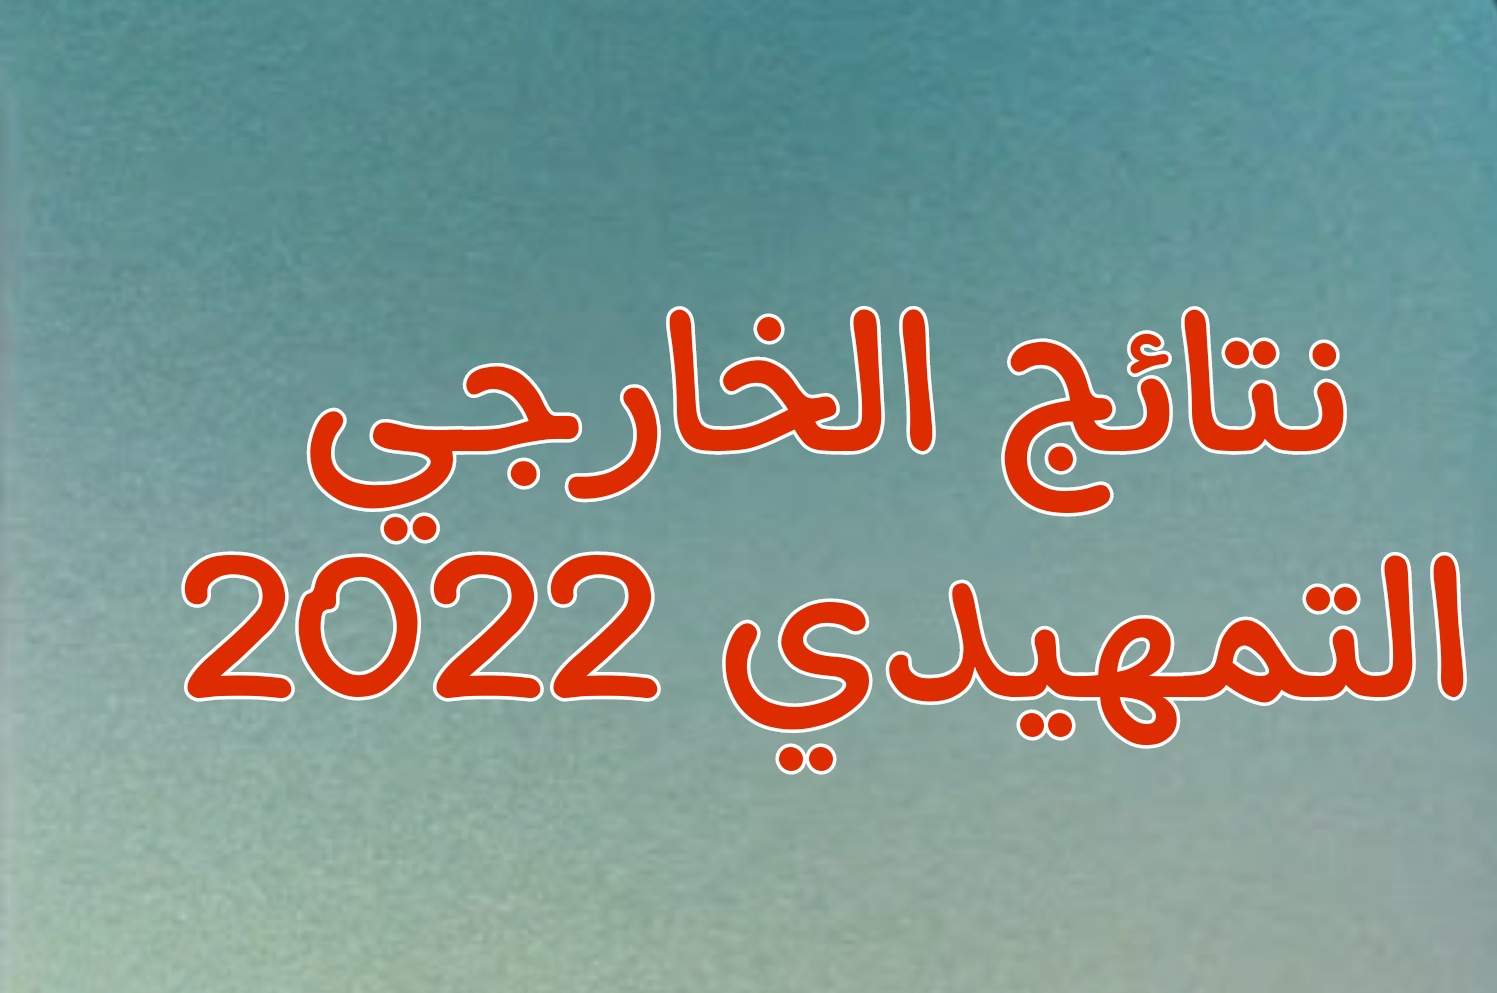 رابط نتائج التمهيدي 2022 سادس اعدادي الاحيائي التطبيقي الادبي التمهيدي جميع المحافظات  تحميل نتائج الخارجي 2022 سادس اعدادي